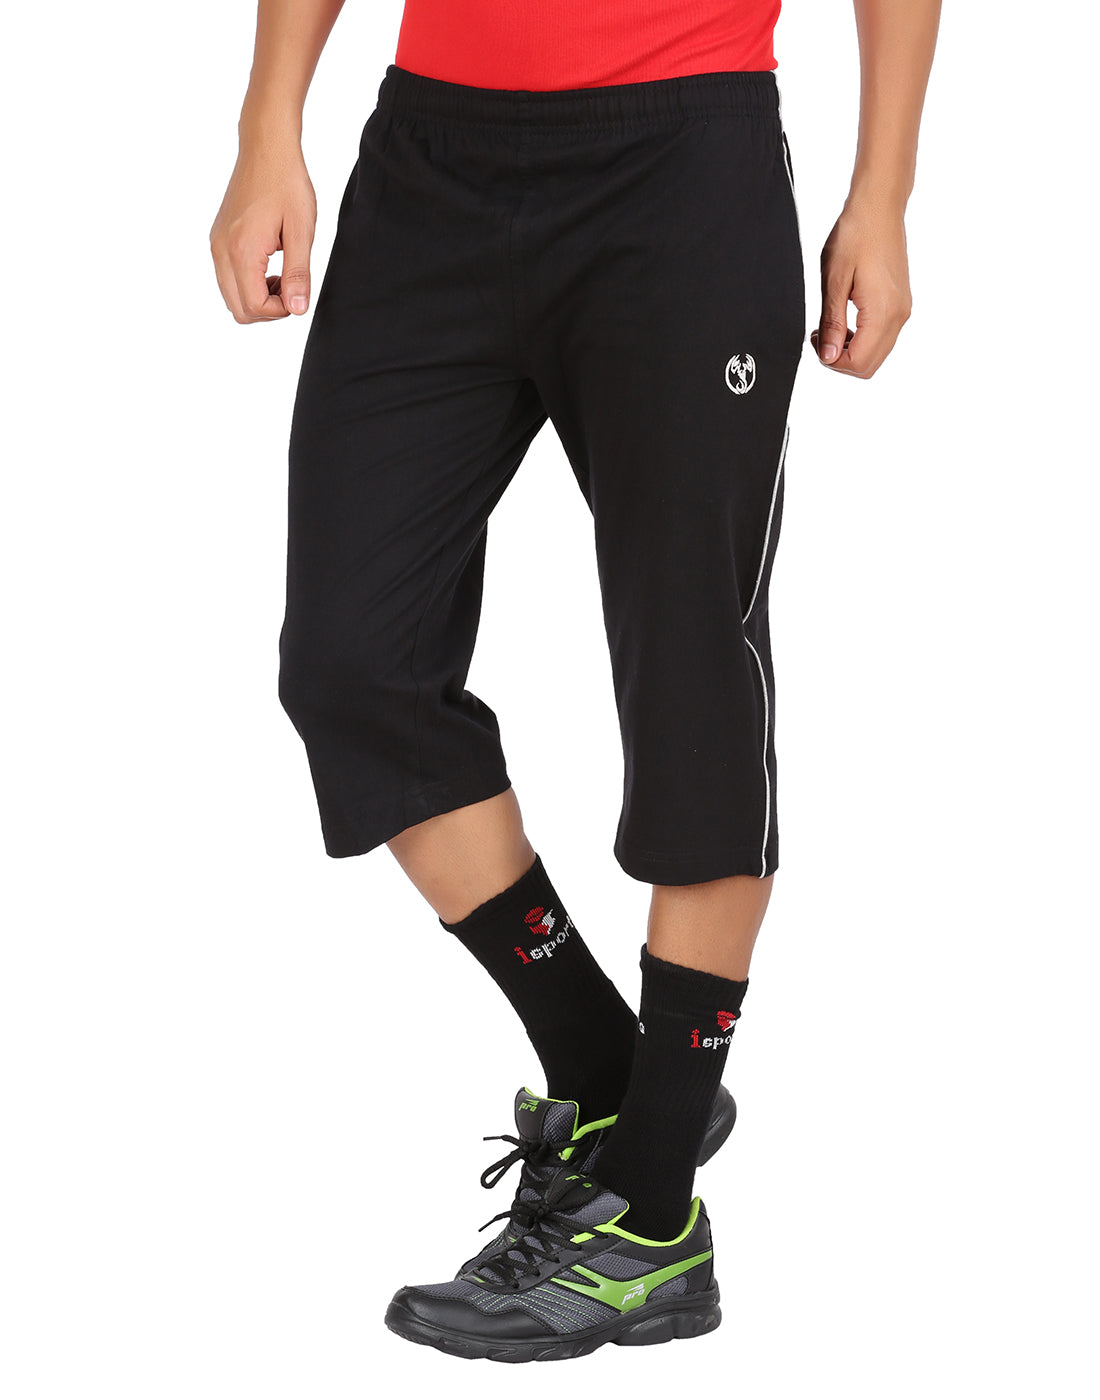 Adidas Black Pants Size 2T – Three Little Peas Children's Resale & Upscale  Boutique